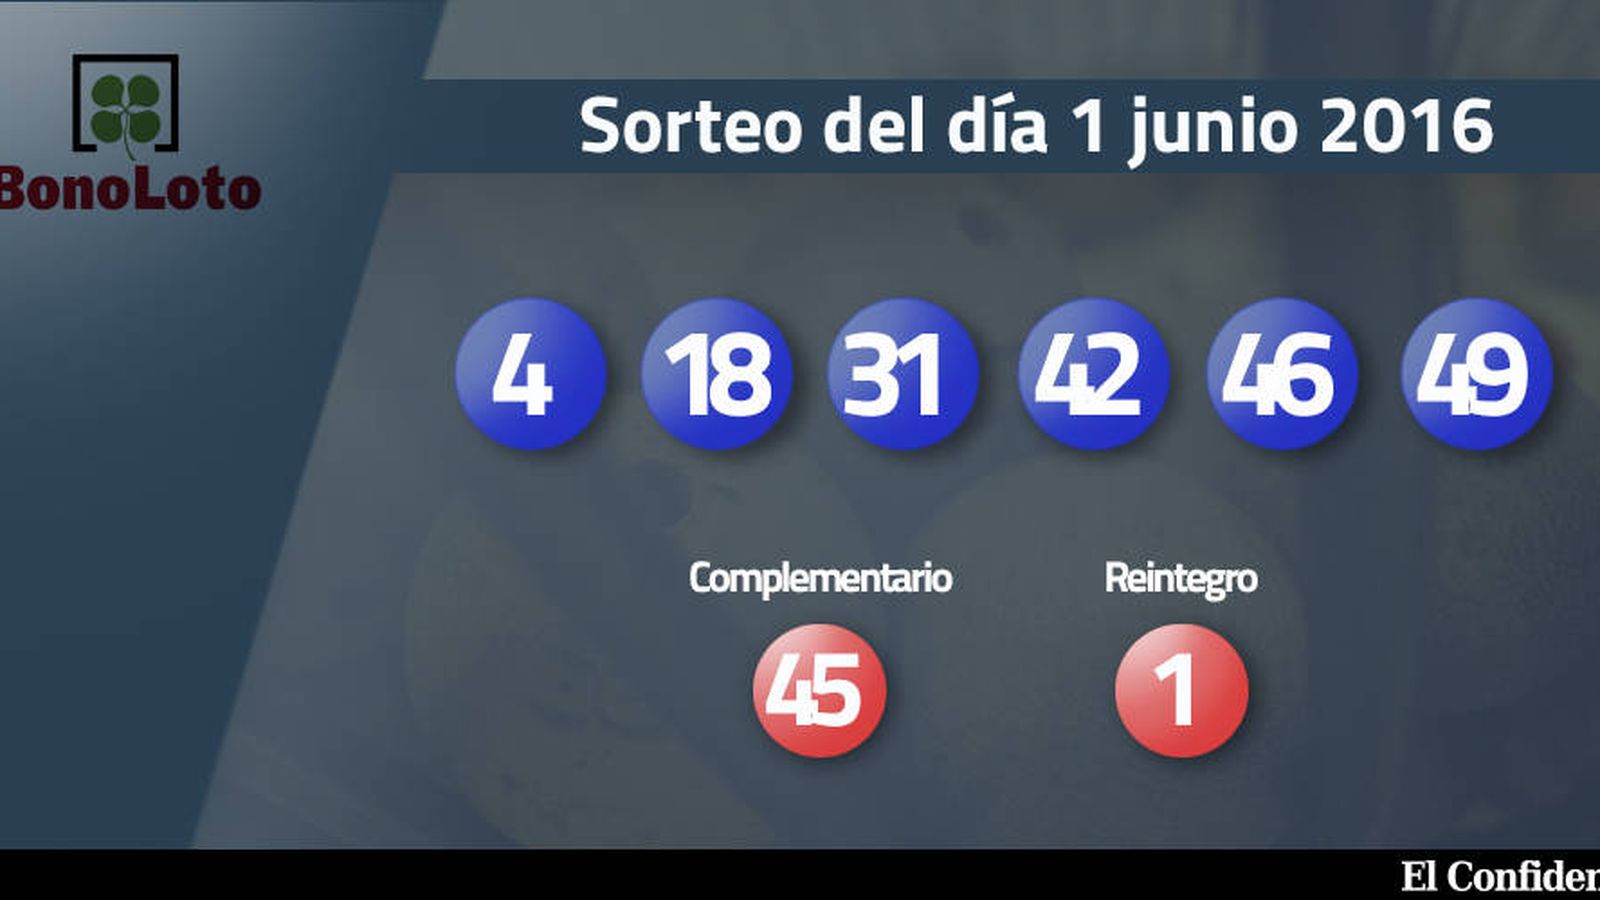 Foto: Resultados del sorteo de la Bonoloto del 1 junio 2016 (EC)